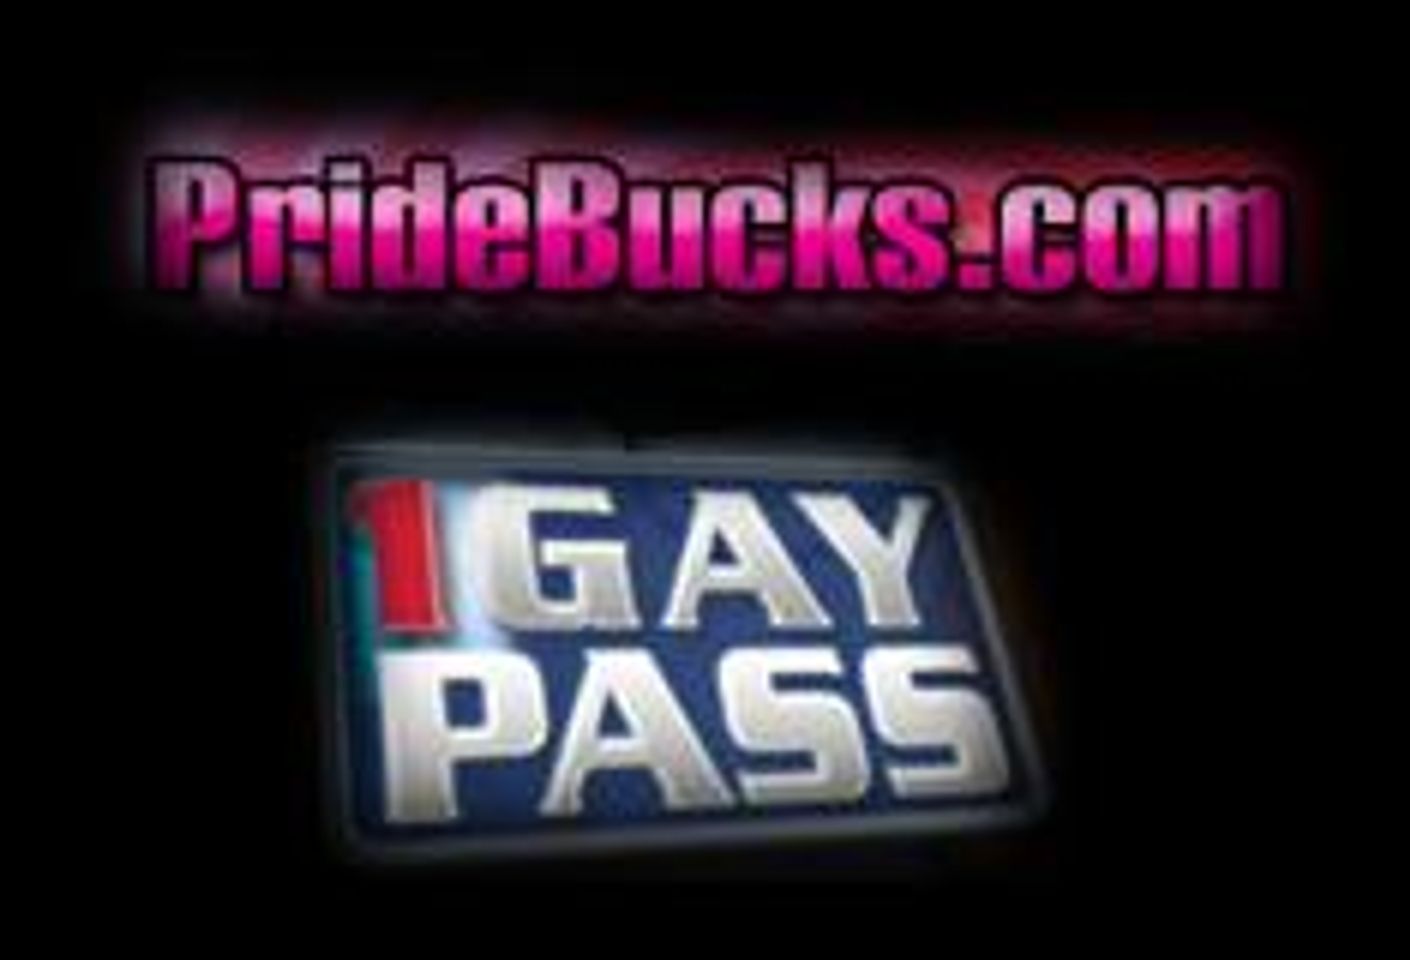 PrideBucks Launches 1GayPass